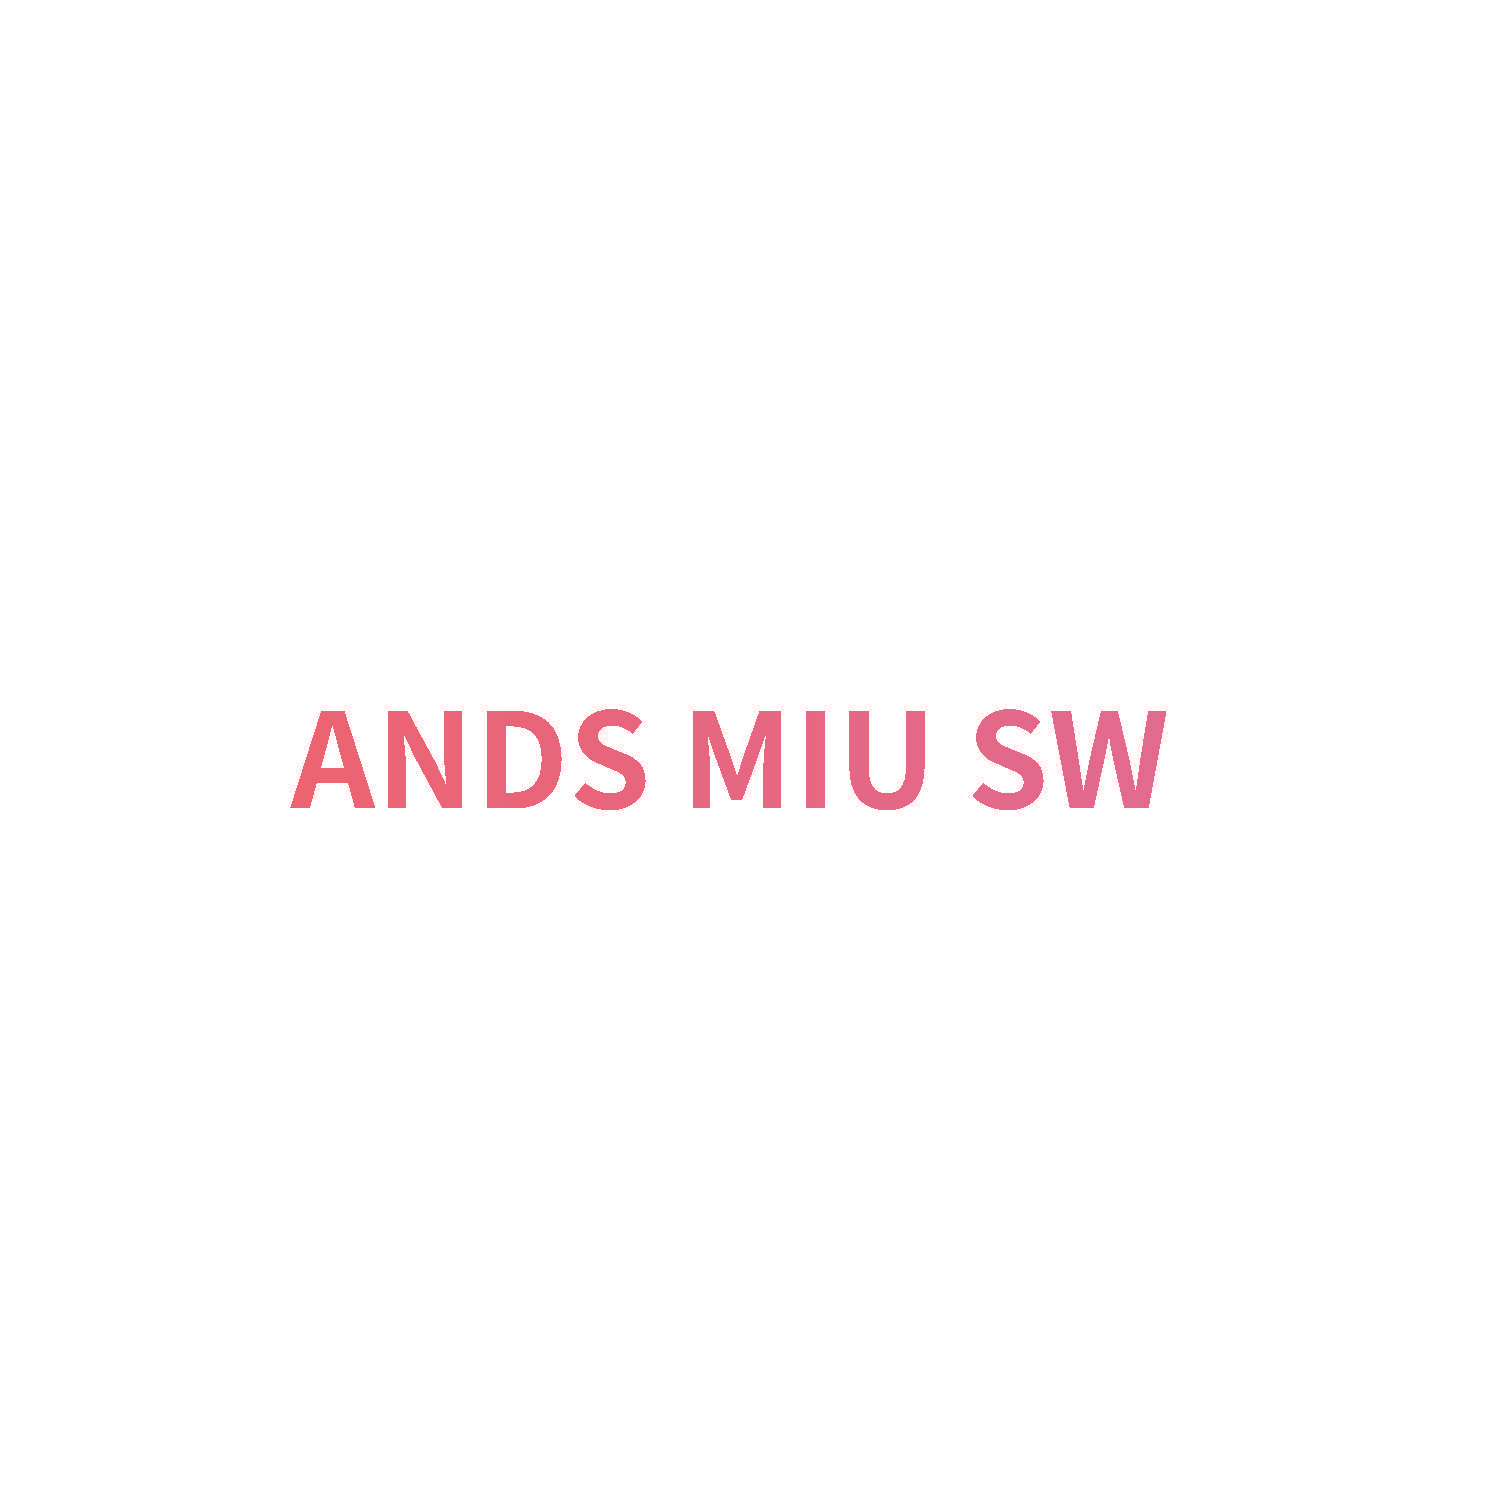 ANDS MIU SW